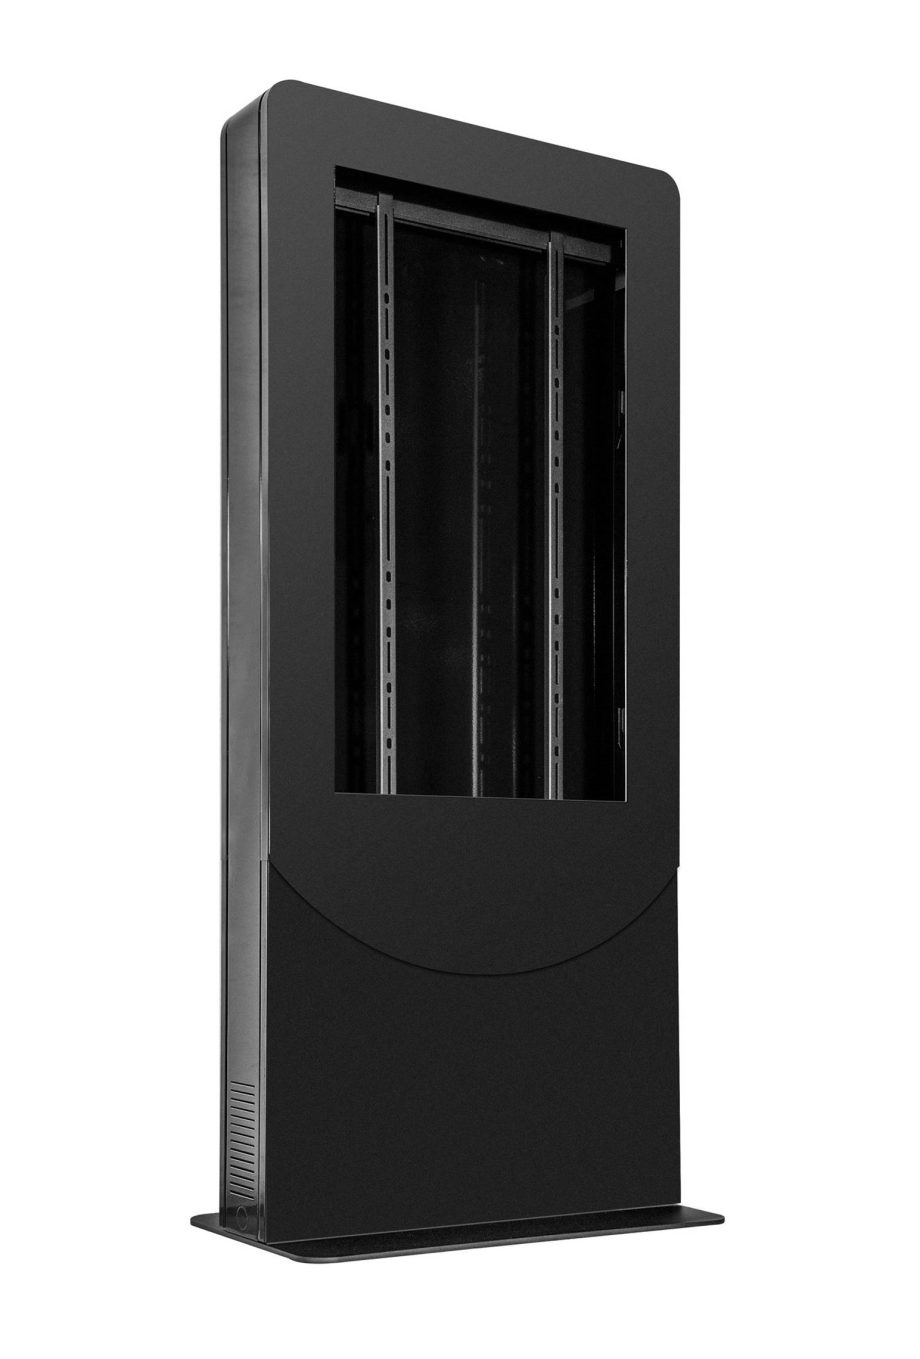 Peerless-AV KIPC2543B Floorstanding Back-to-Back Portrait Kiosk for 43″ Displays up to 1.81″ Deep, Black